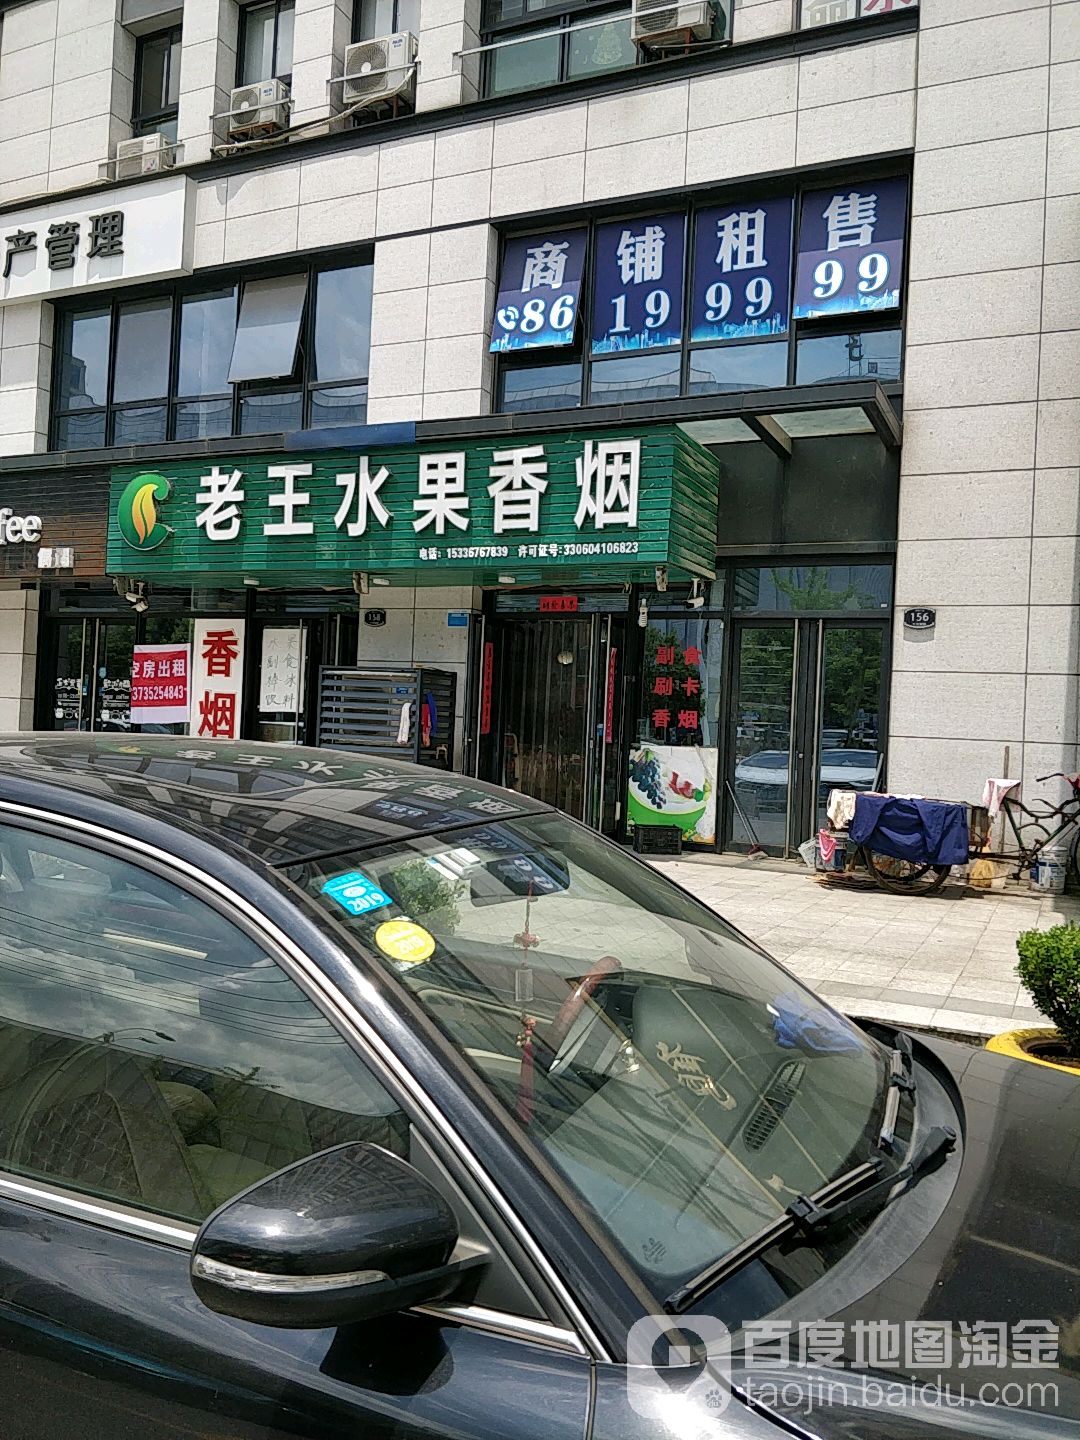 老王水果超市(十九峰路店)